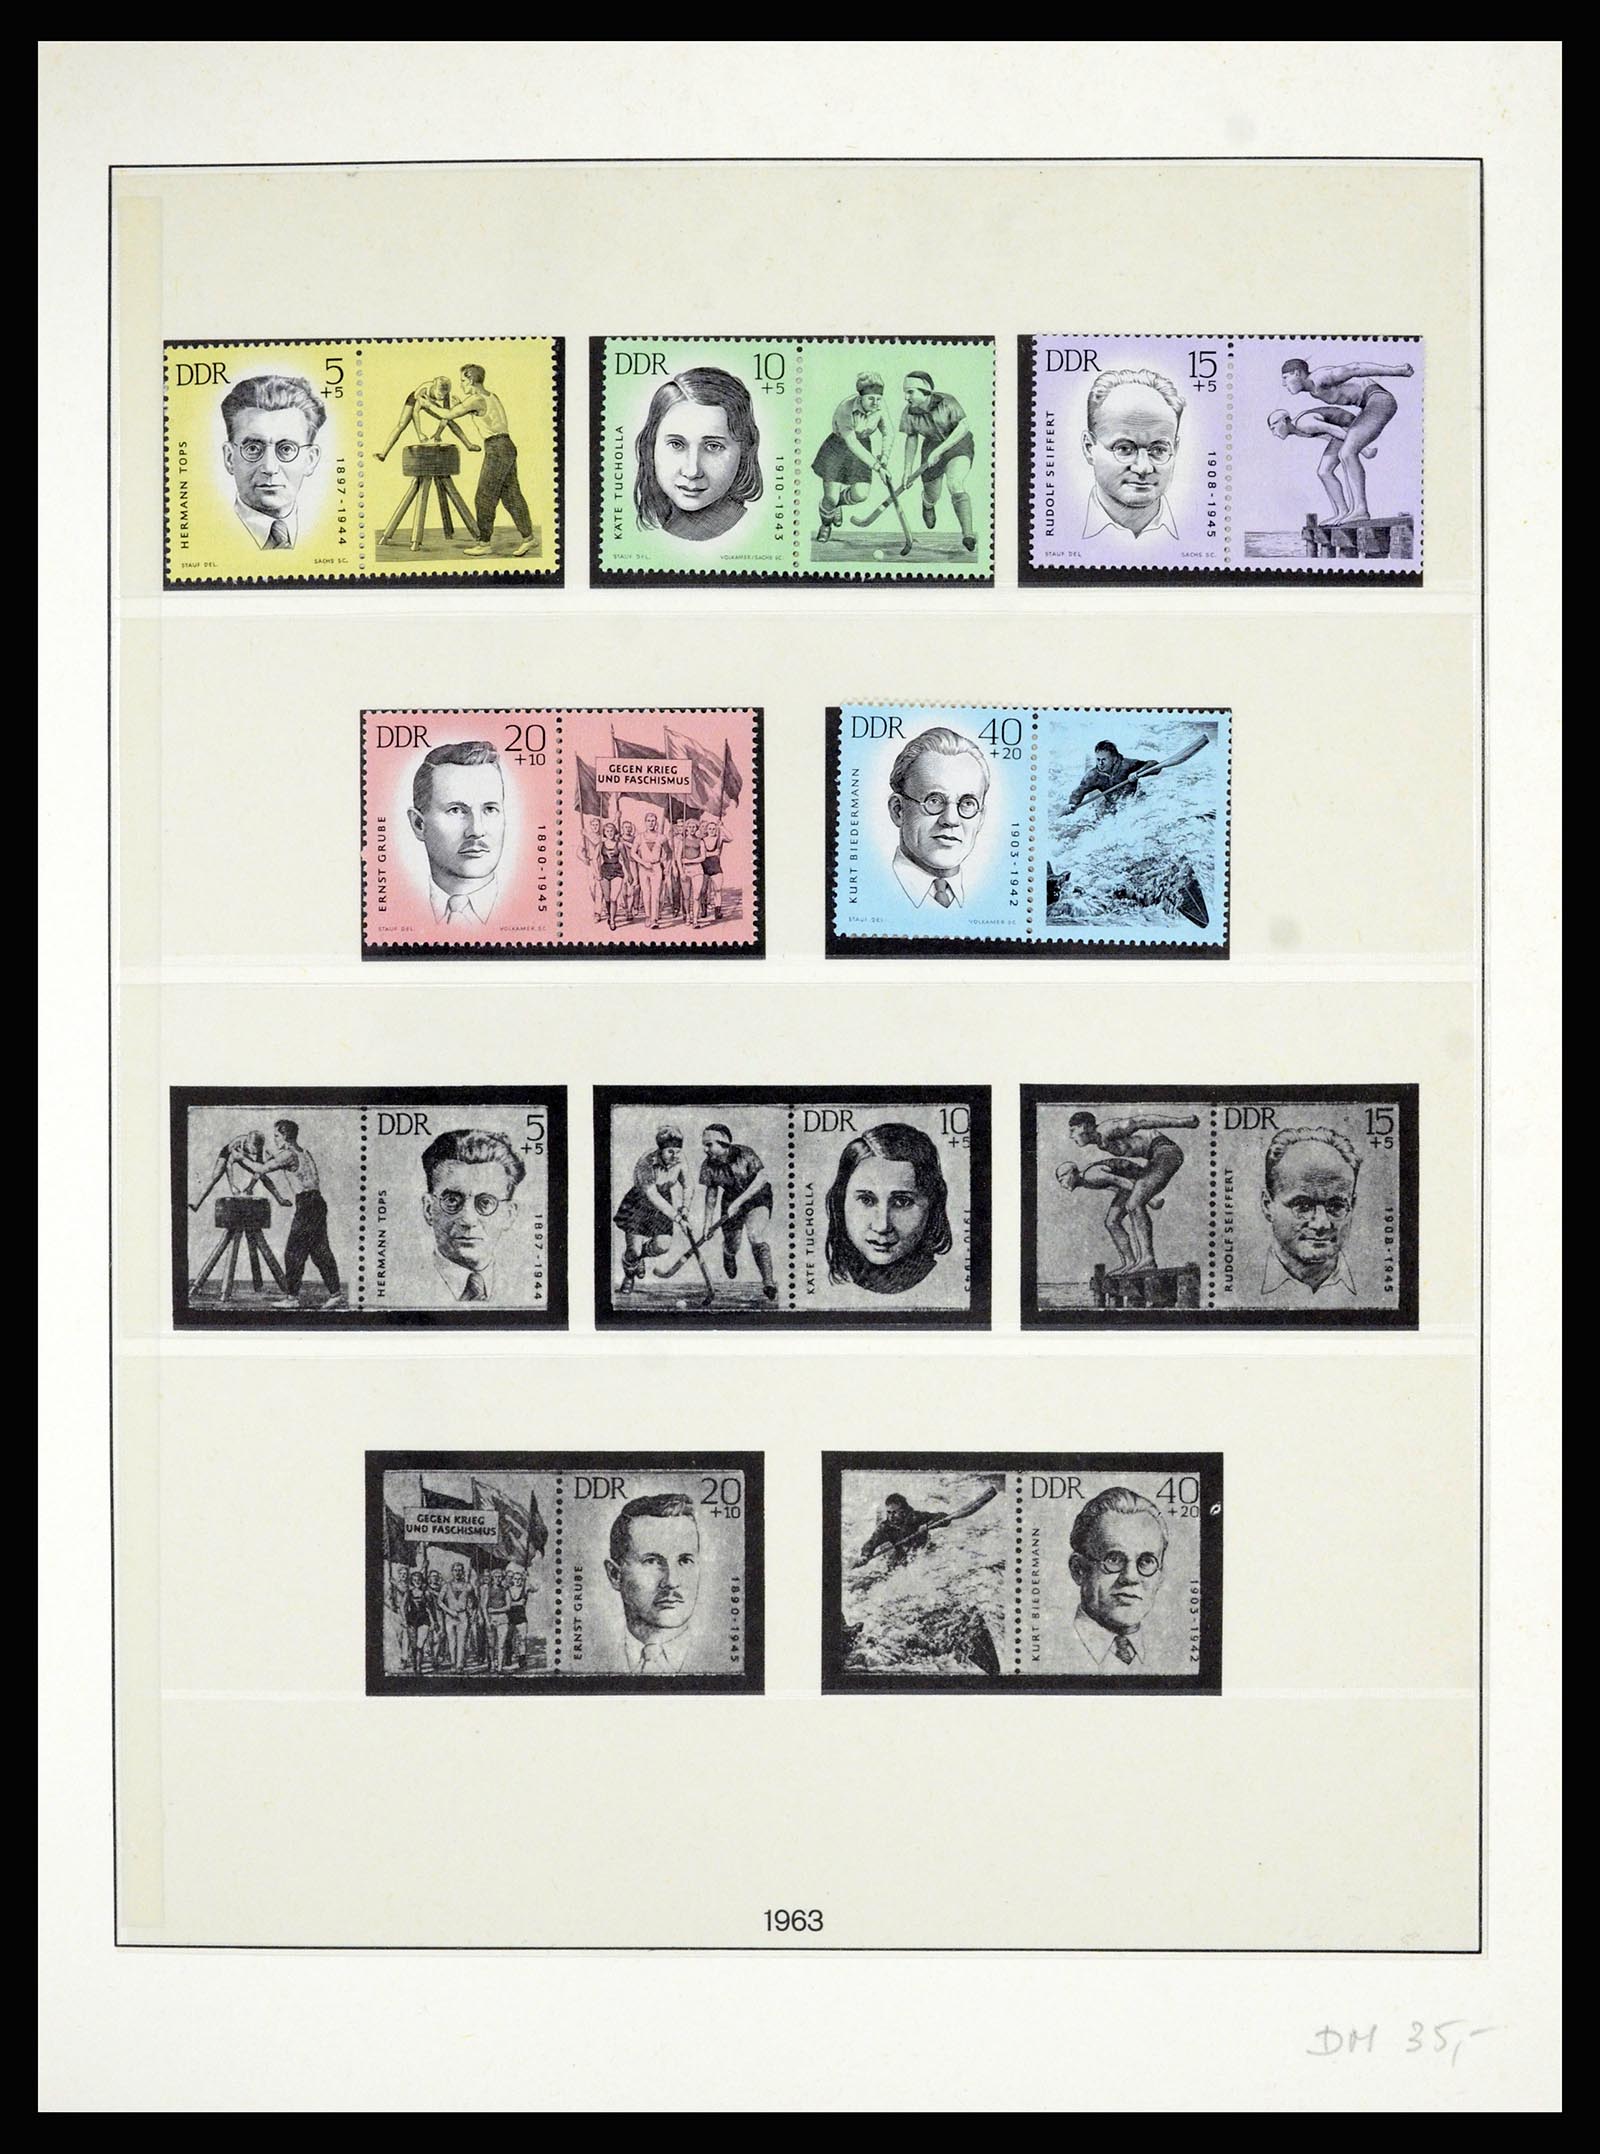 36879 021 - Postzegelverzameling 36879 DDR combinaties 1955-1981.